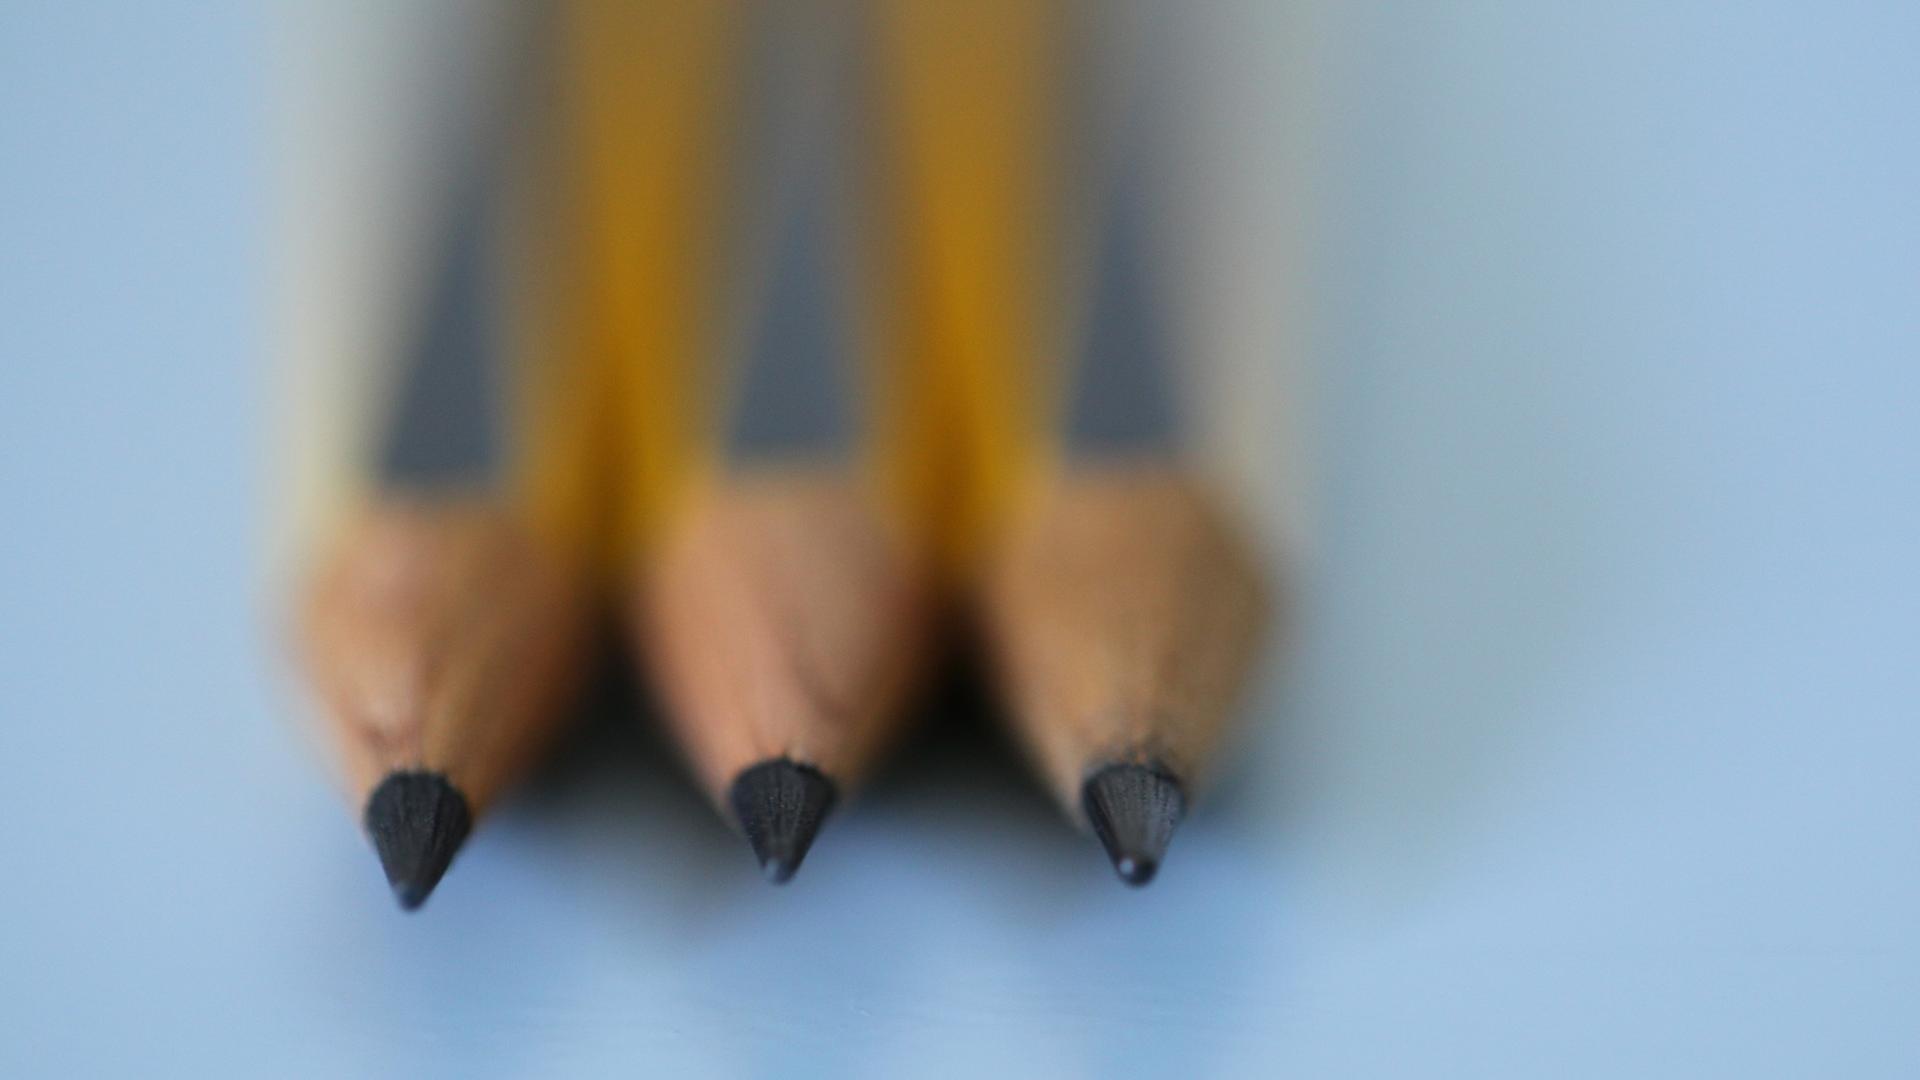 Drei Bleistifte liegen nebeneinander.